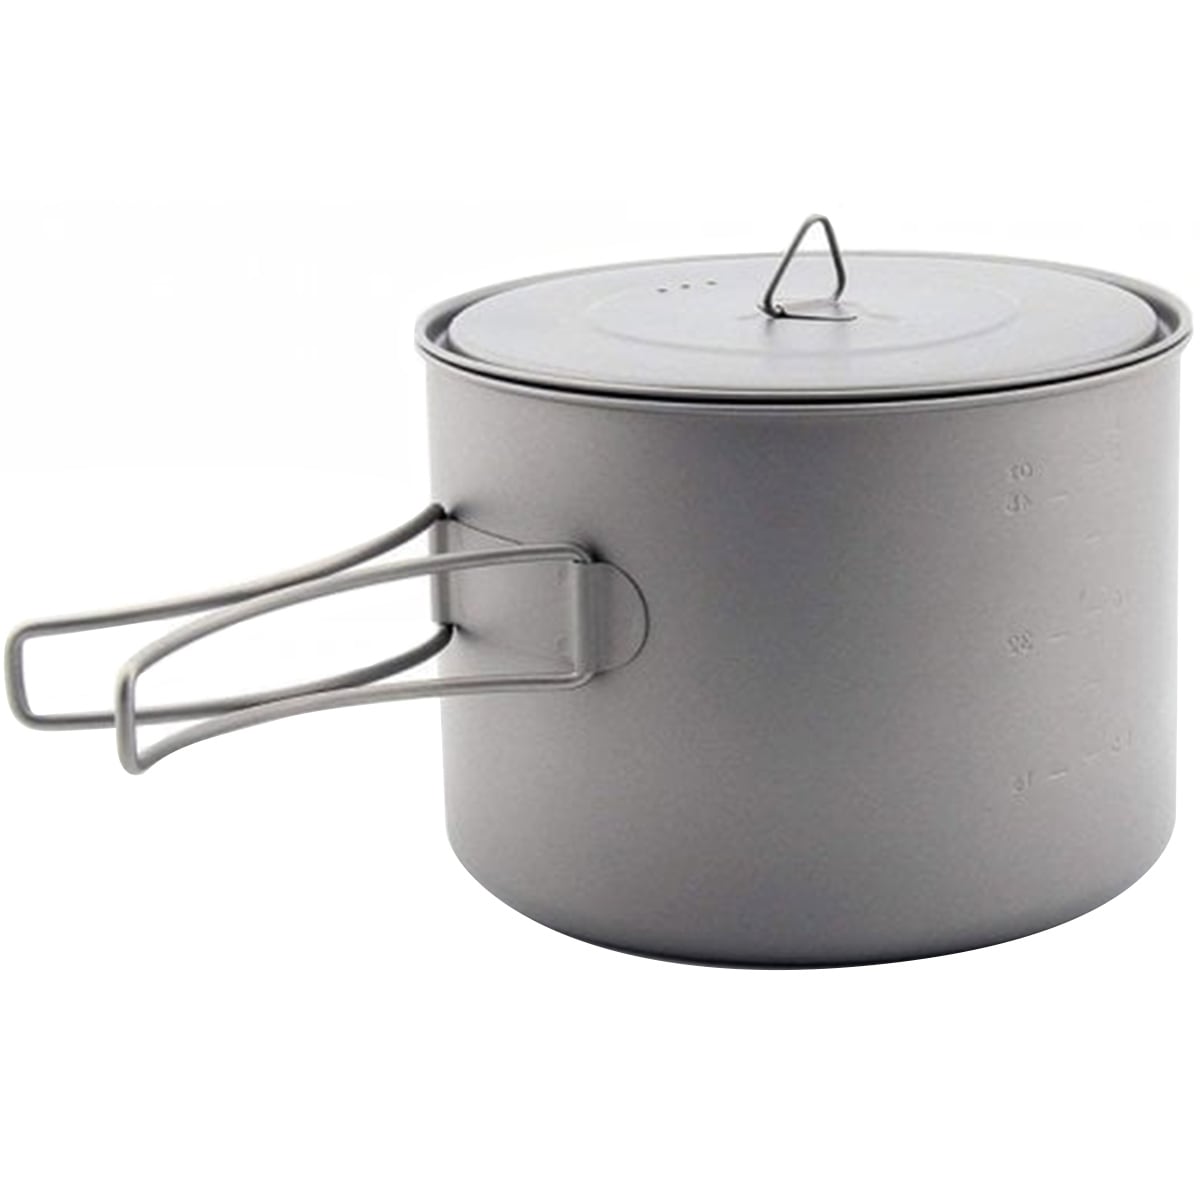 TOAKS Titanium 1600ml Pot with Pan CKW-1600 Outdoor Camping Bowl Pot Pan